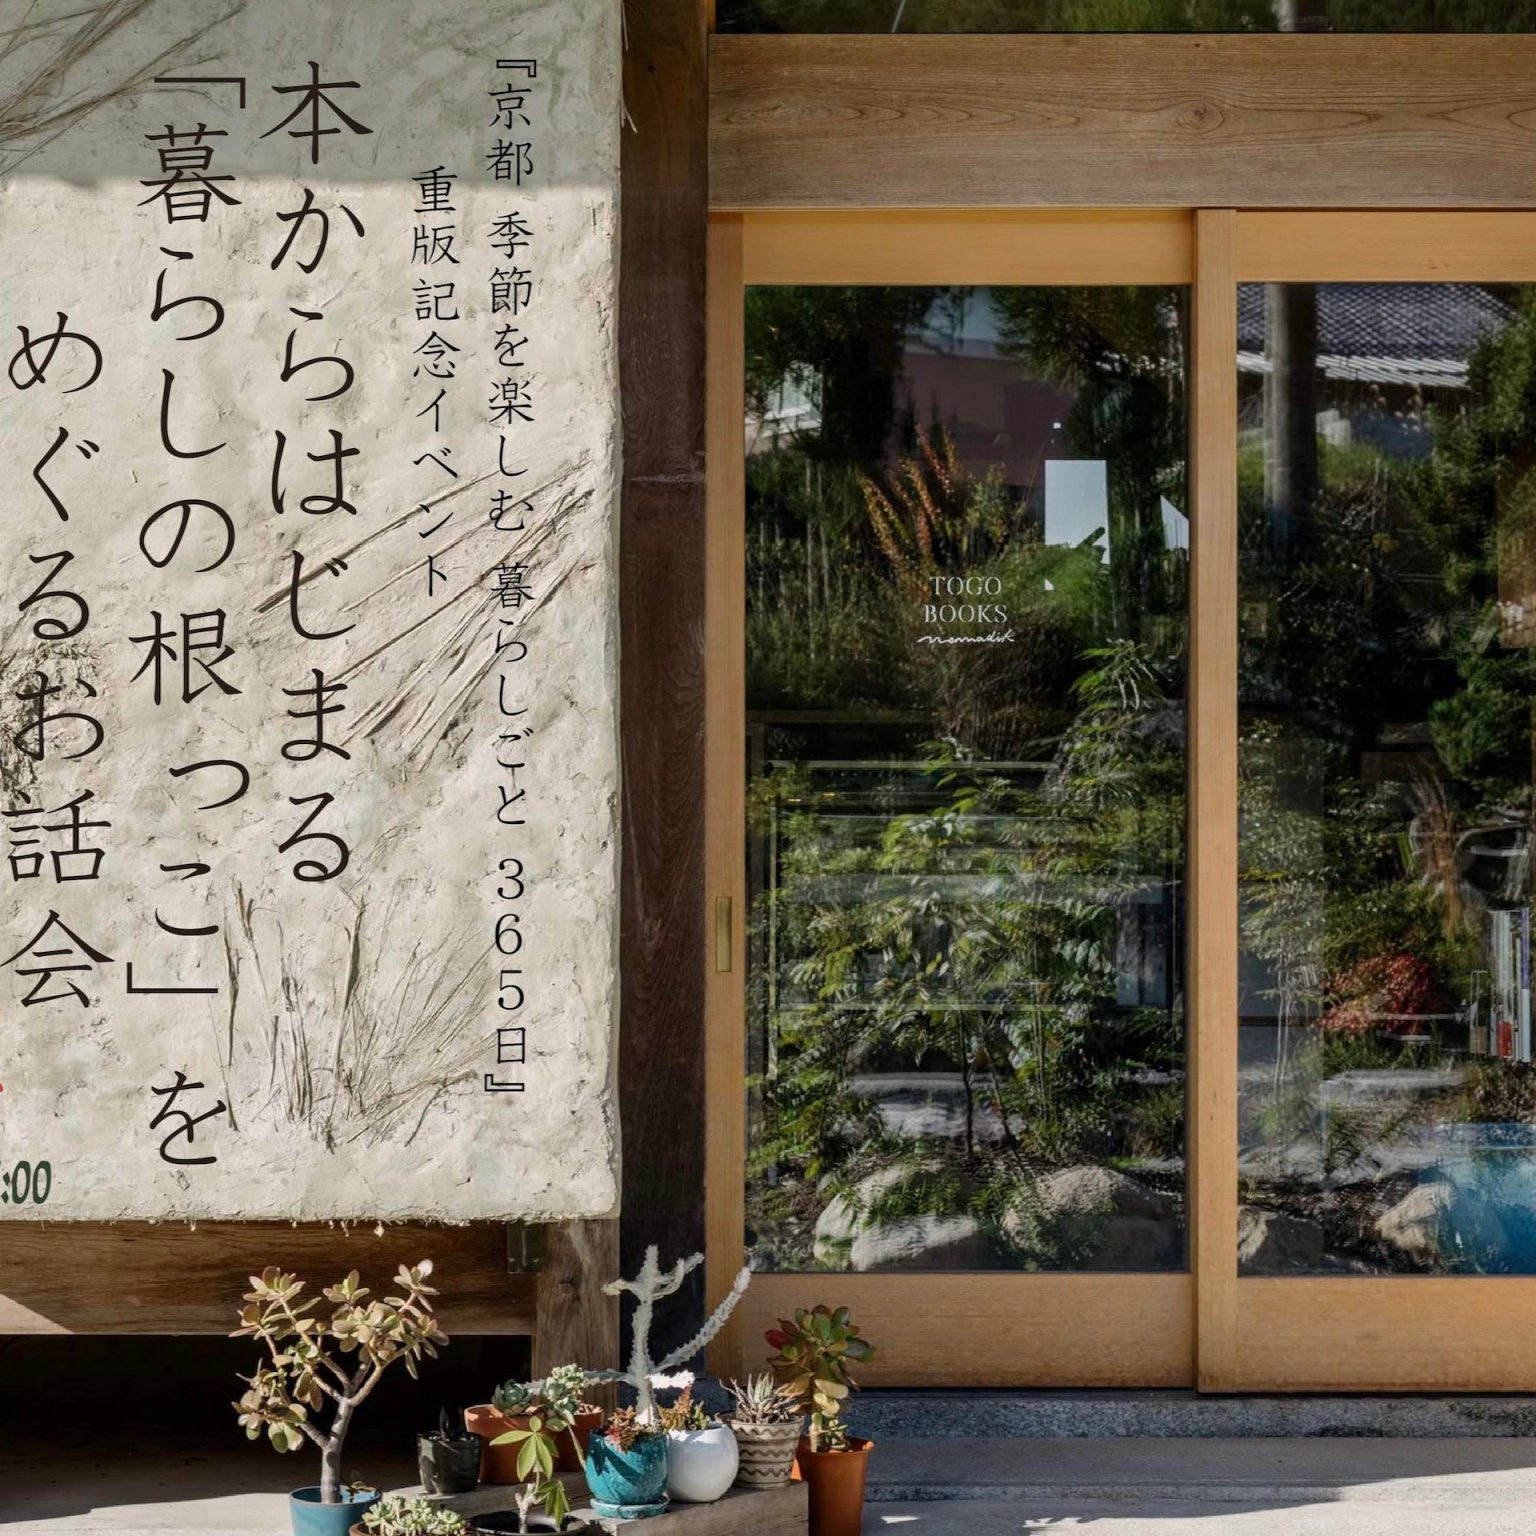 「京都 季節を楽しむ 暮らしごと 365日」 重版記念イベント  #本からはじまる  「暮らしの根っこ」をめぐるお話会  ー みつける、つながる、場をひらく ー